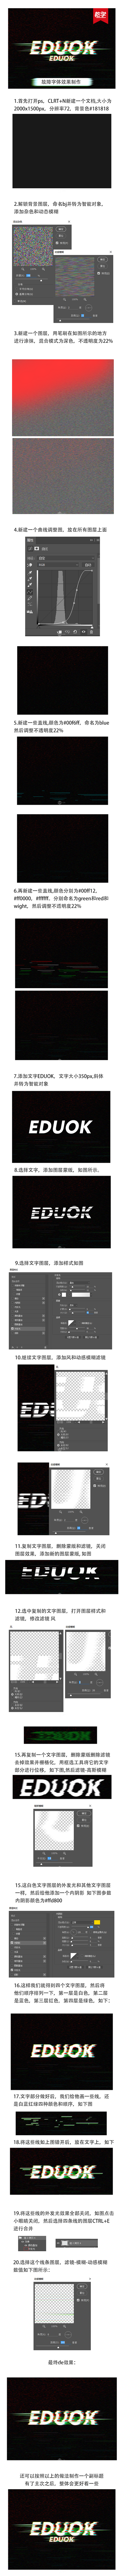 故障字体效果教程-UI中国-专业用户体验...